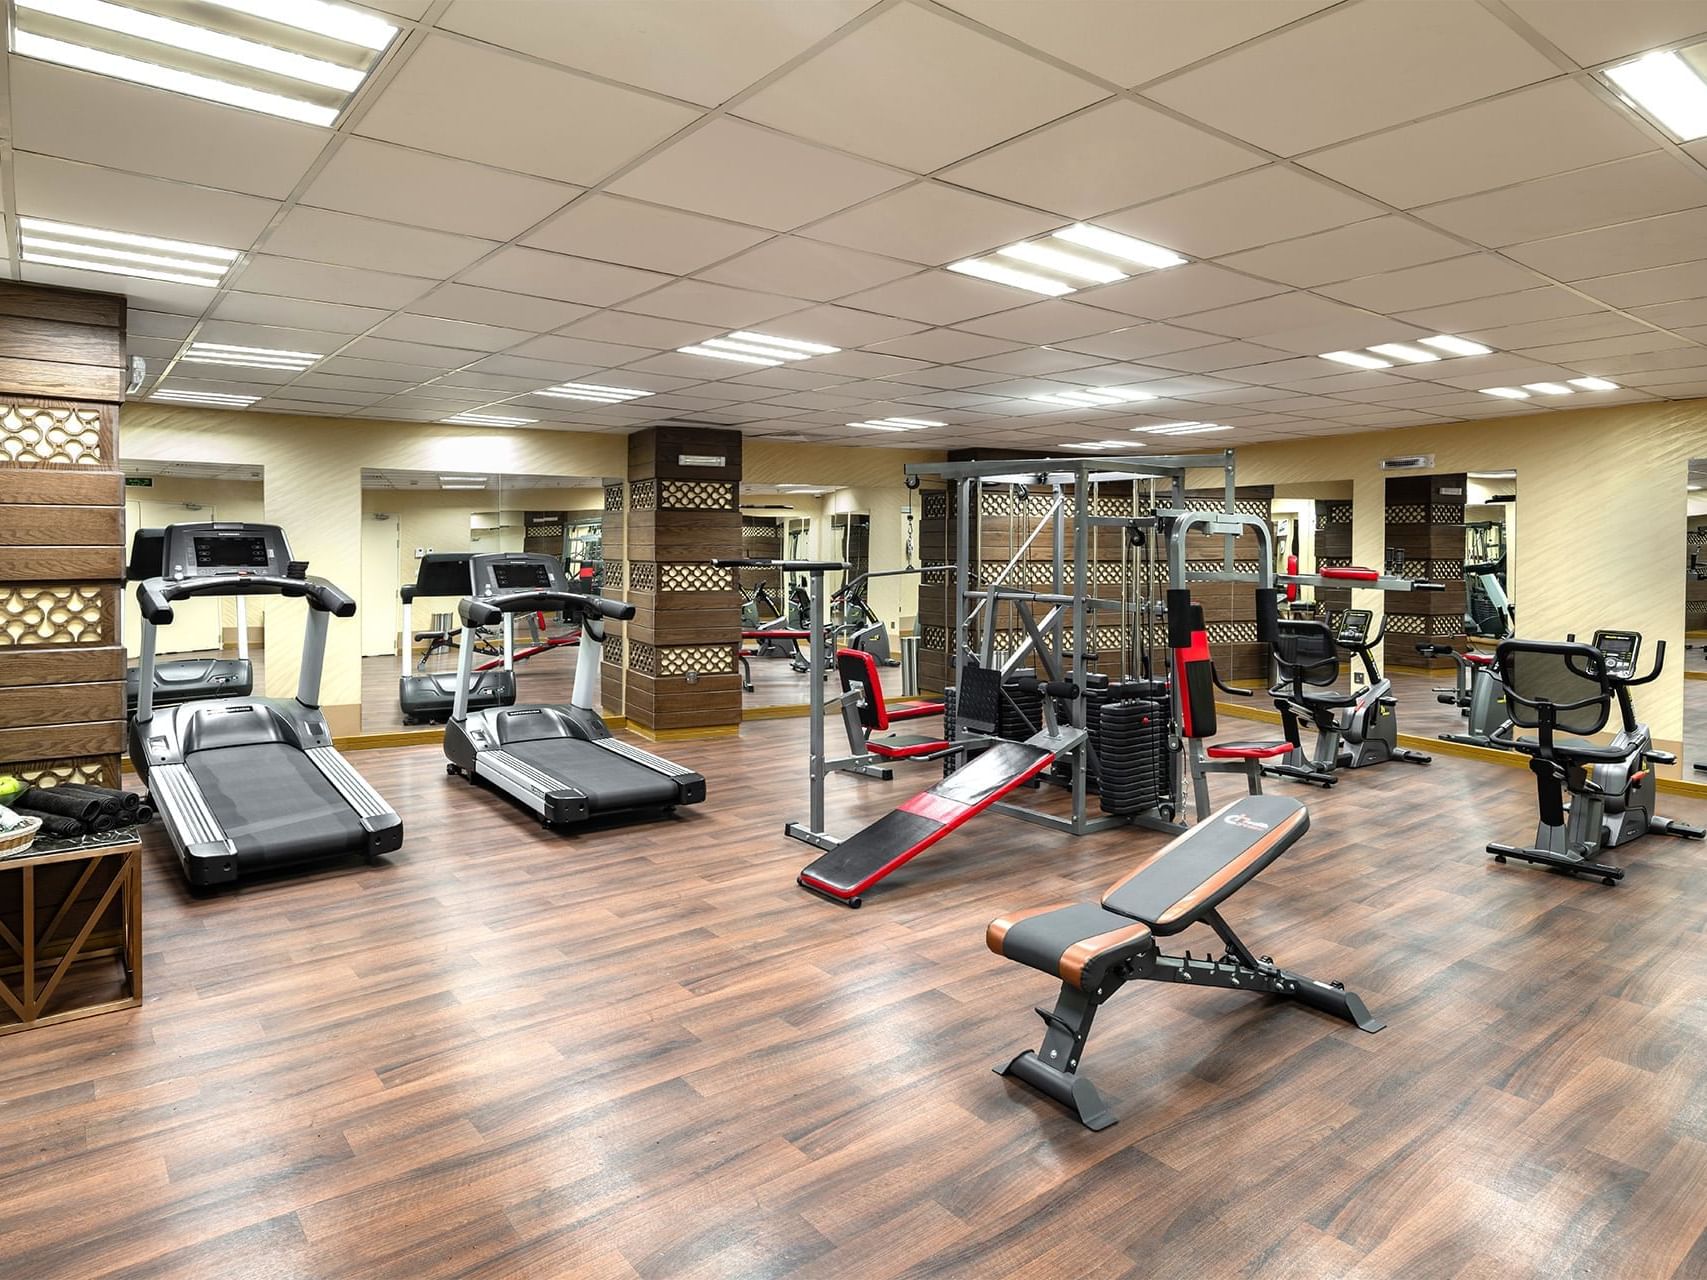 Treadmills and Gym equipment arranged at Elaf Al Taqwa Hotel